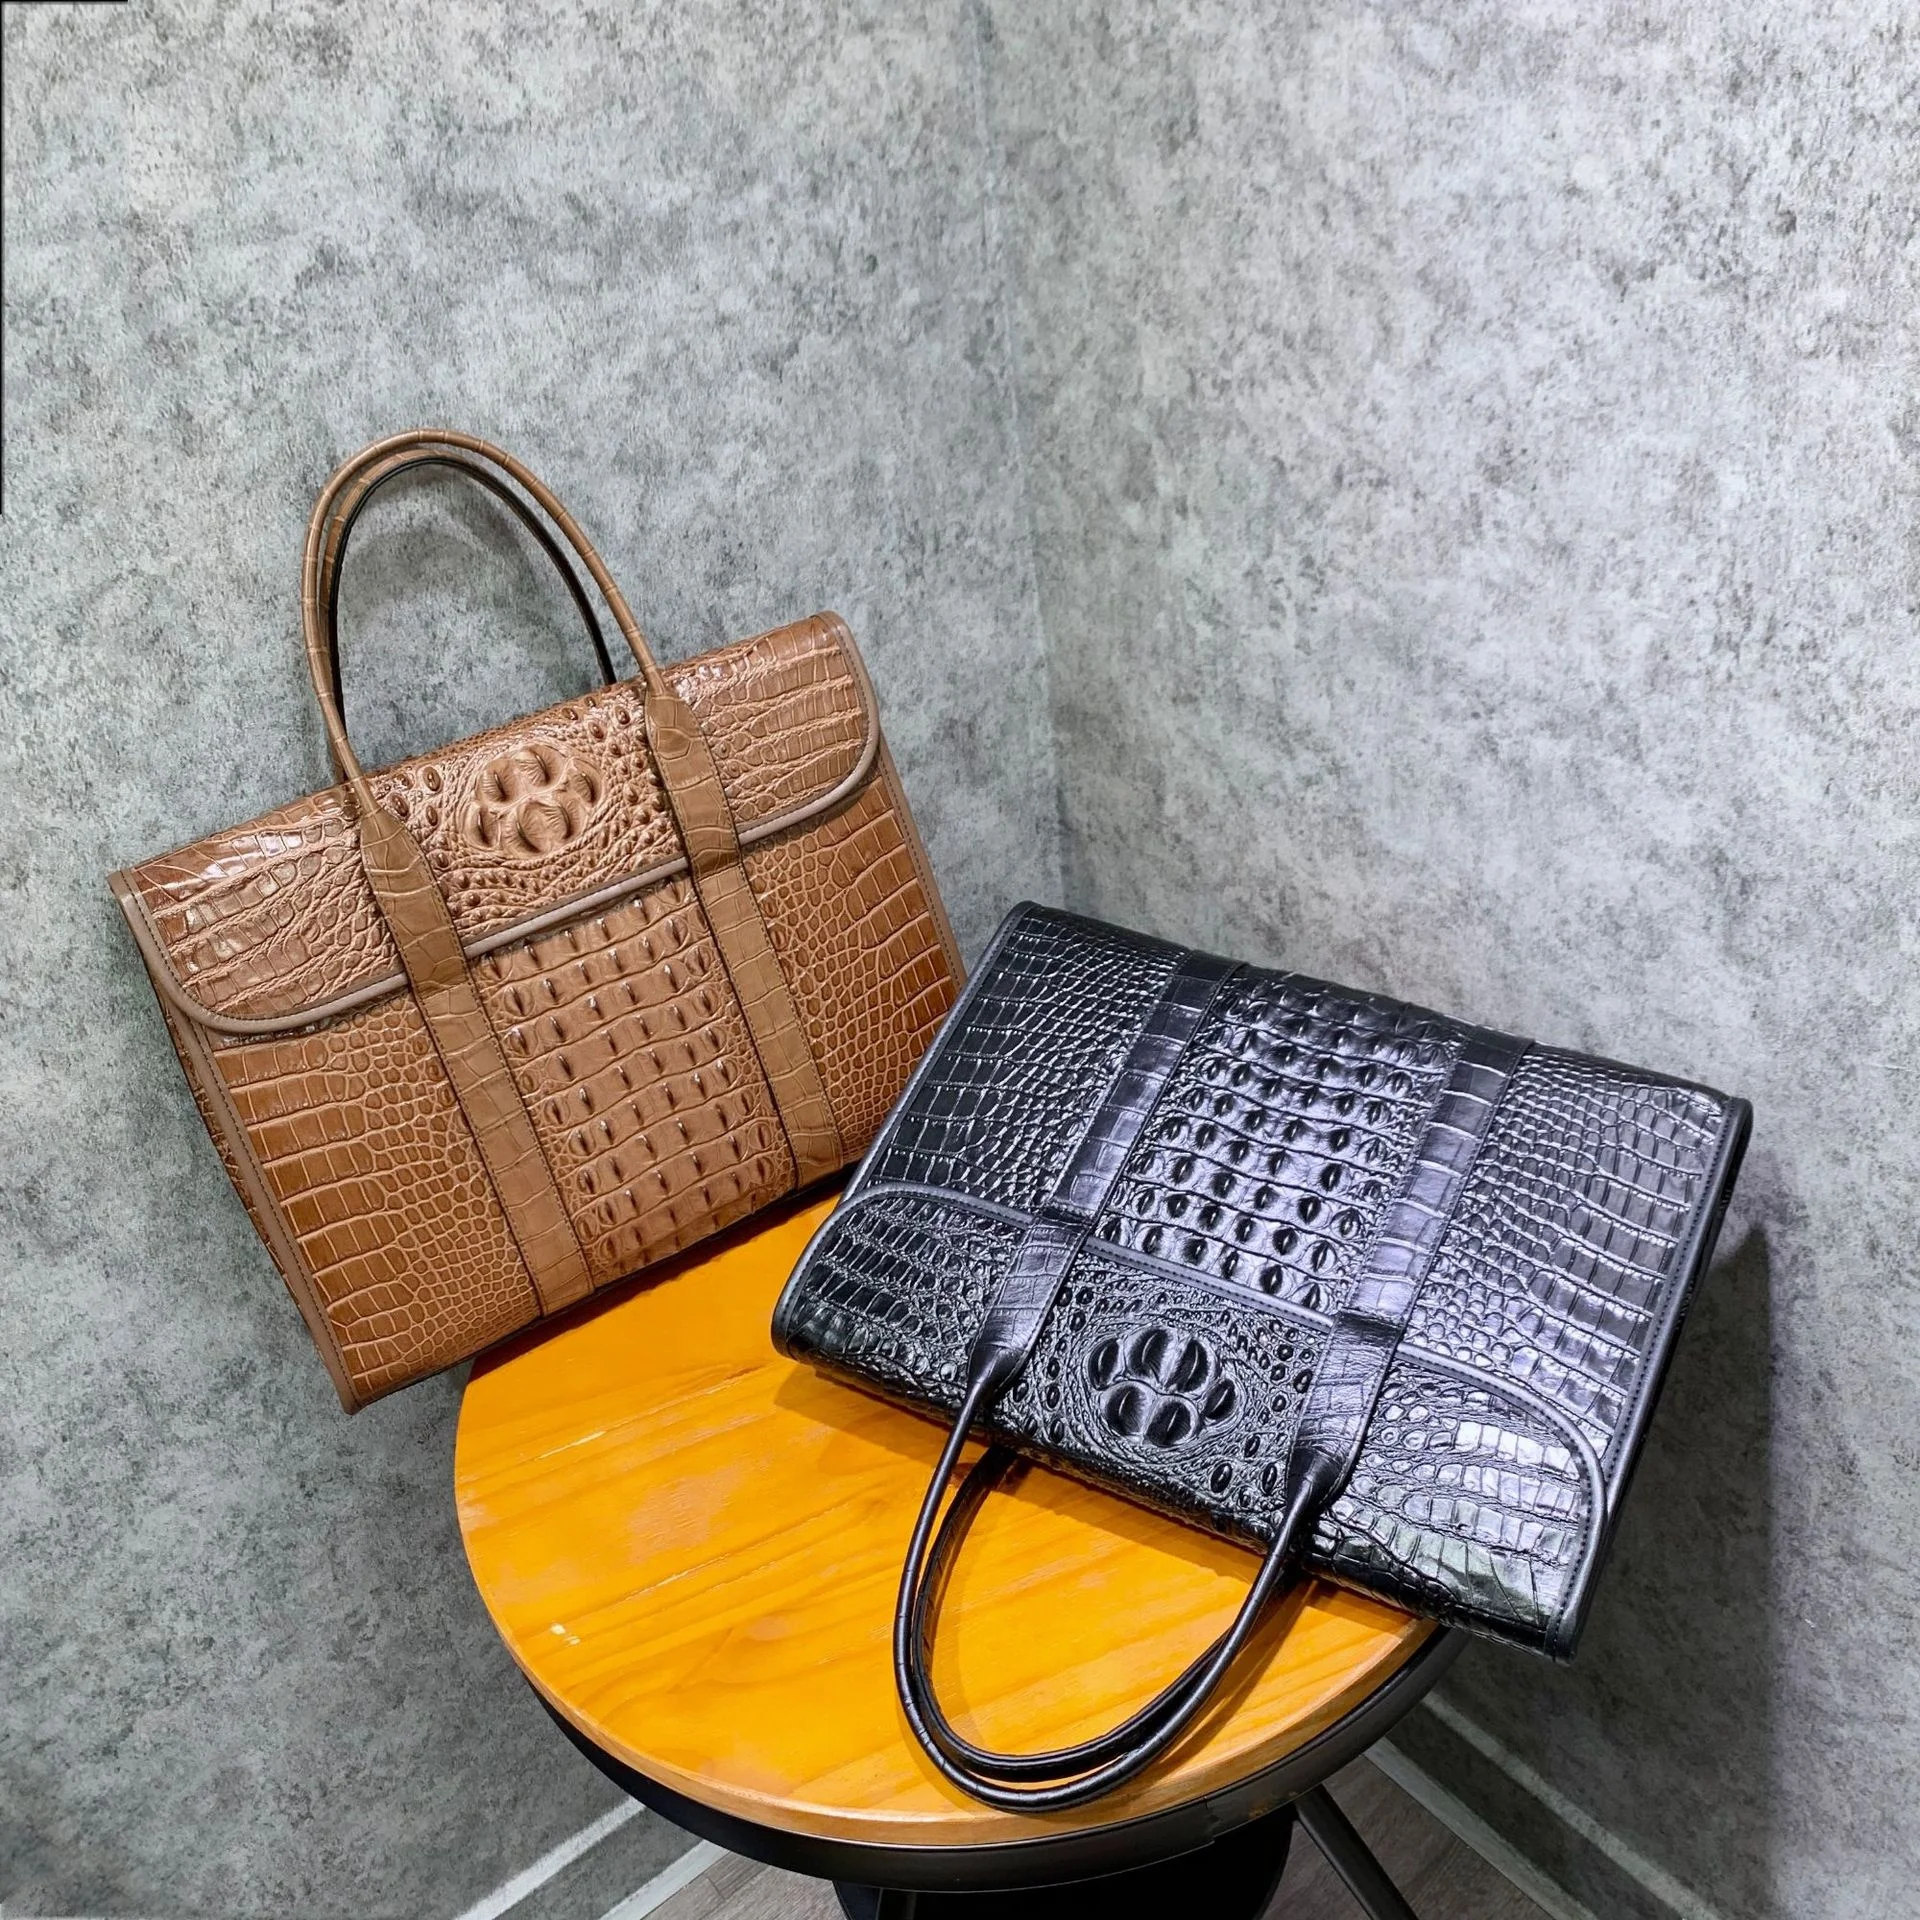 New Crocodile Pattern Leather Business Handbag High-grade Single Shoulder Messenger Bag Laptop Bag Men's Briefcase Free Shipping